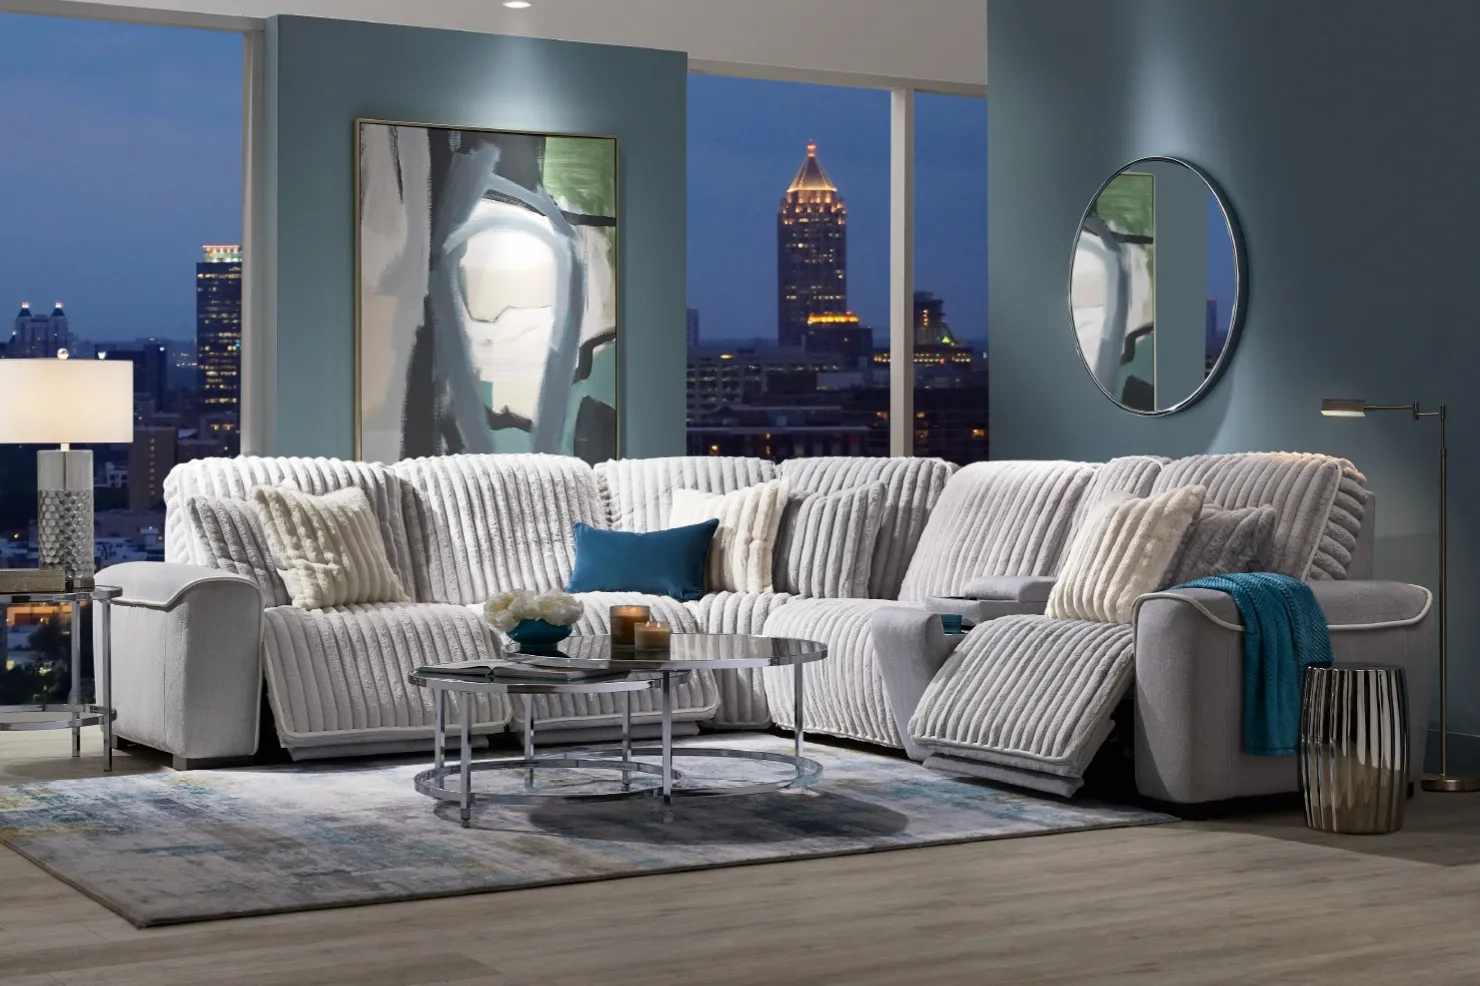 Comprar online recibidores económicos  Home decor, Mirror decor living  room, Home decor furniture